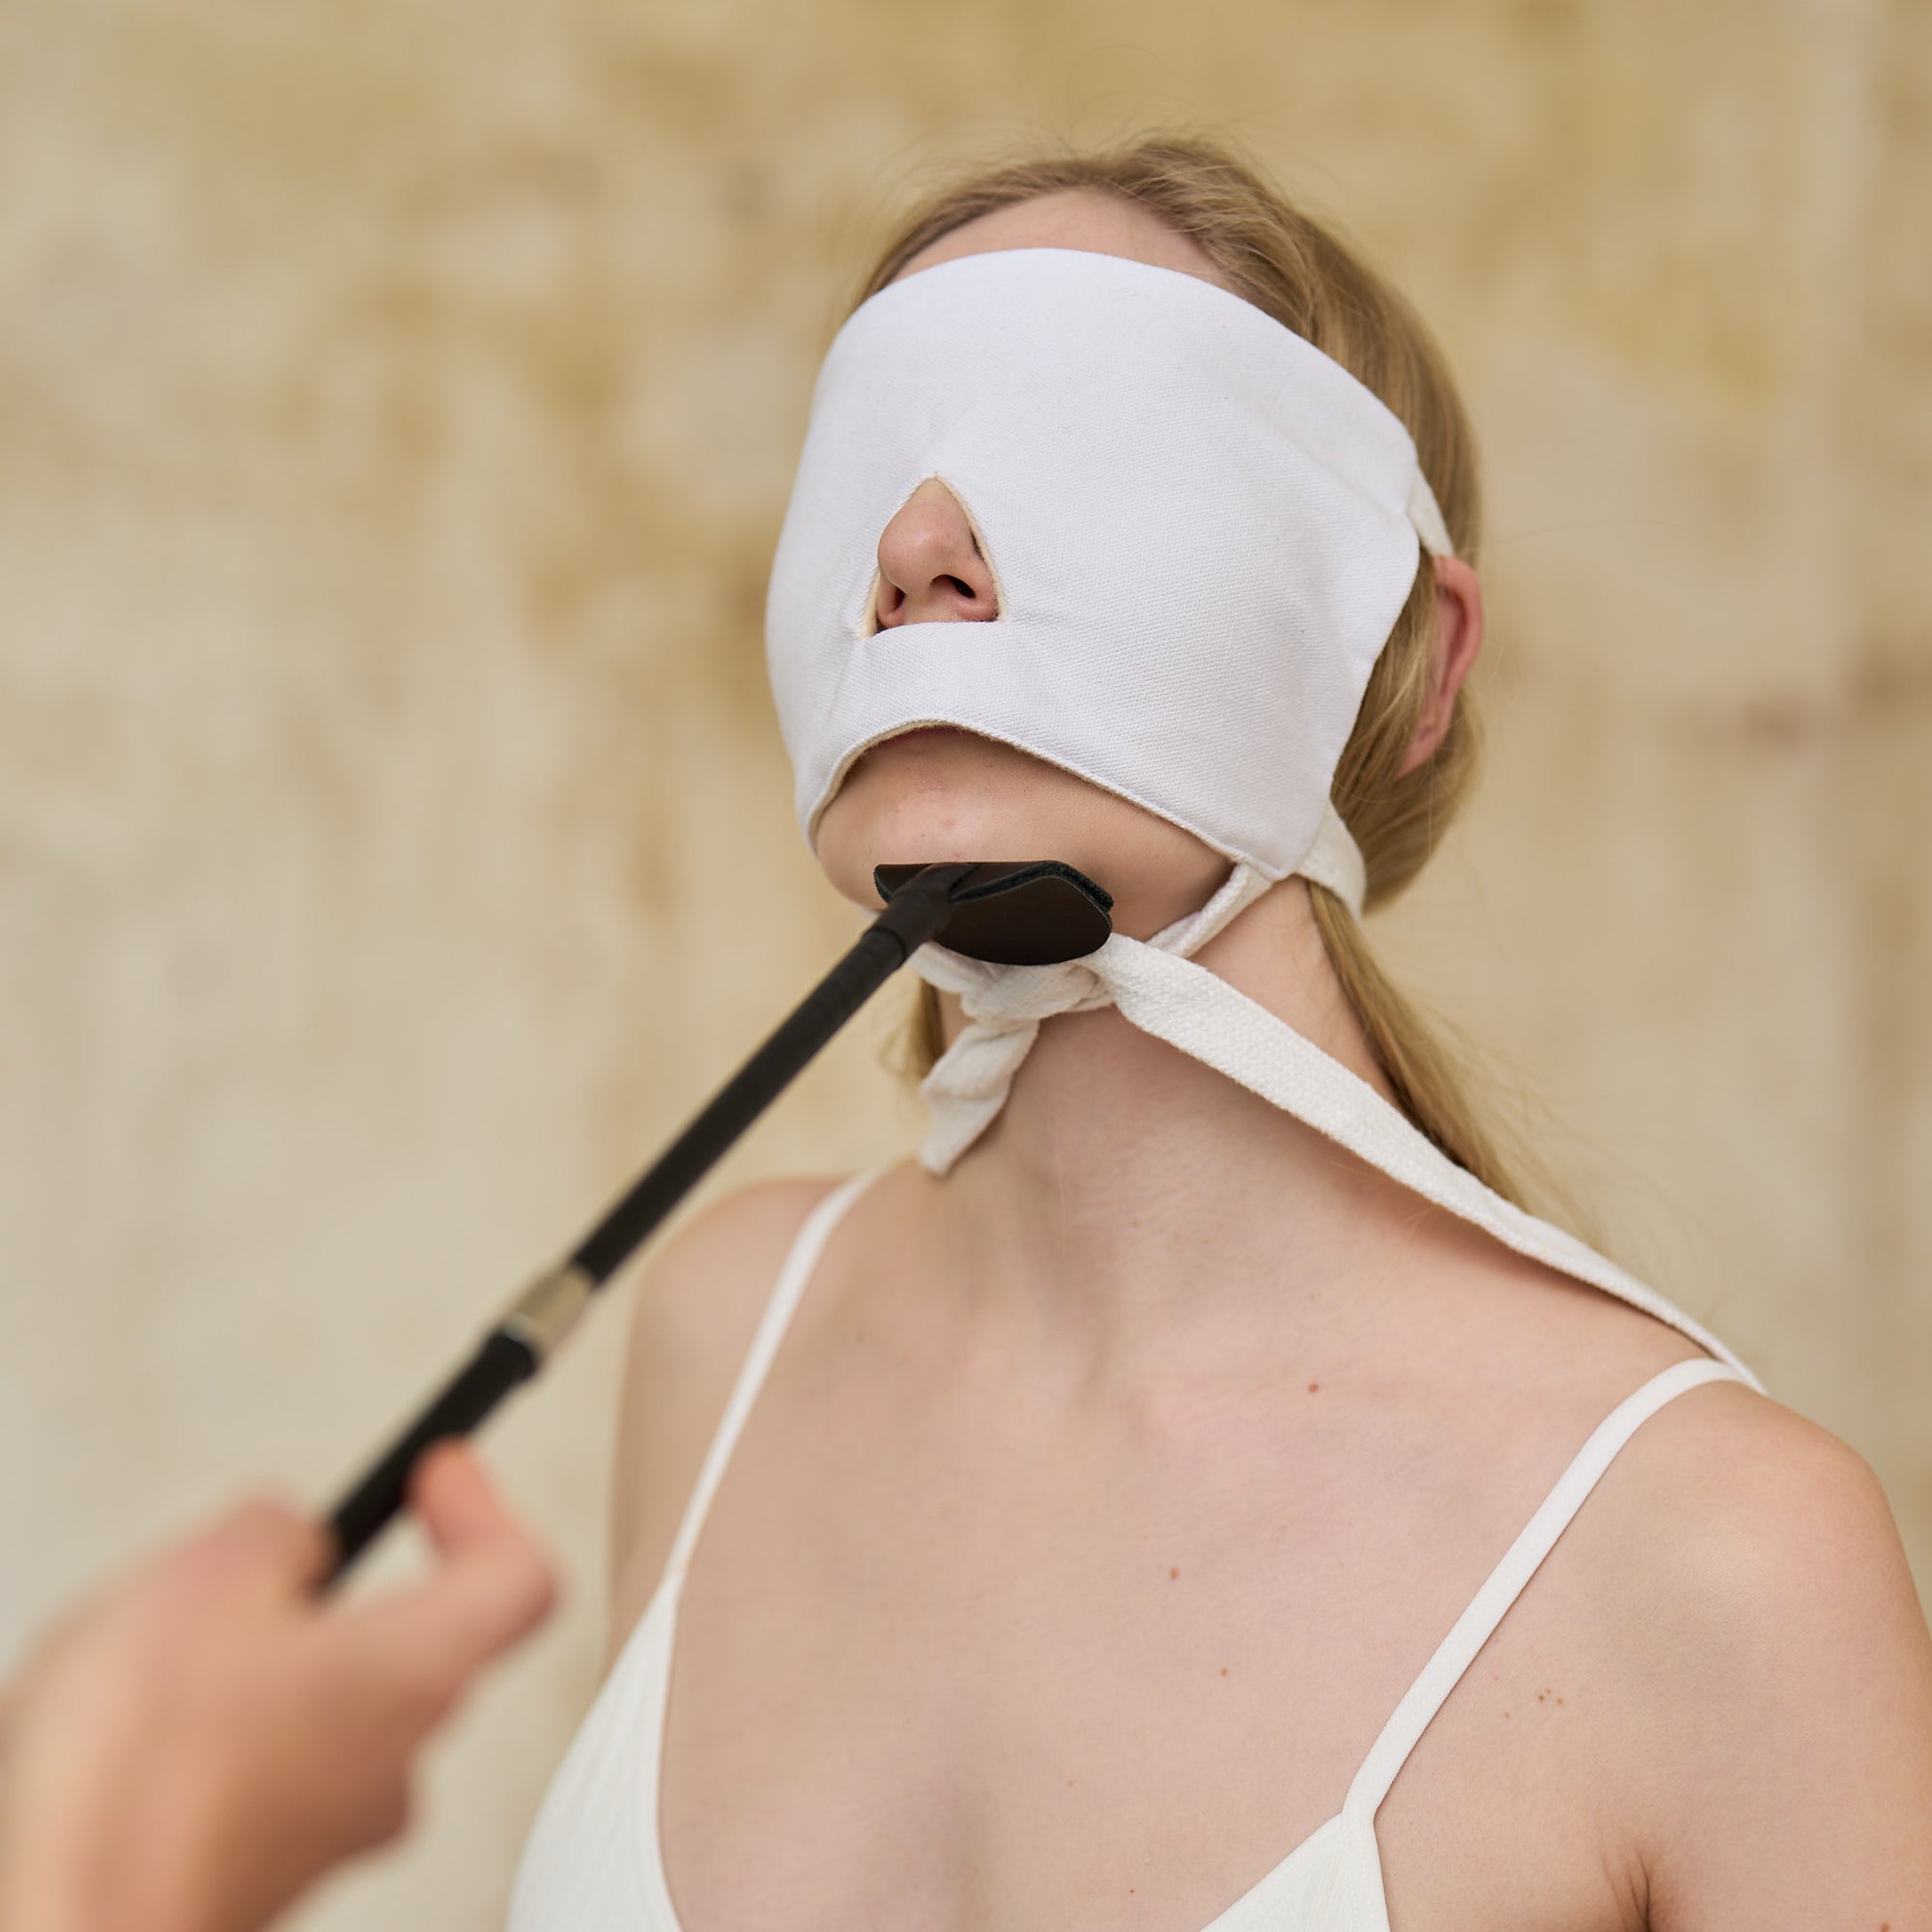 BDSM Blindfold Mask